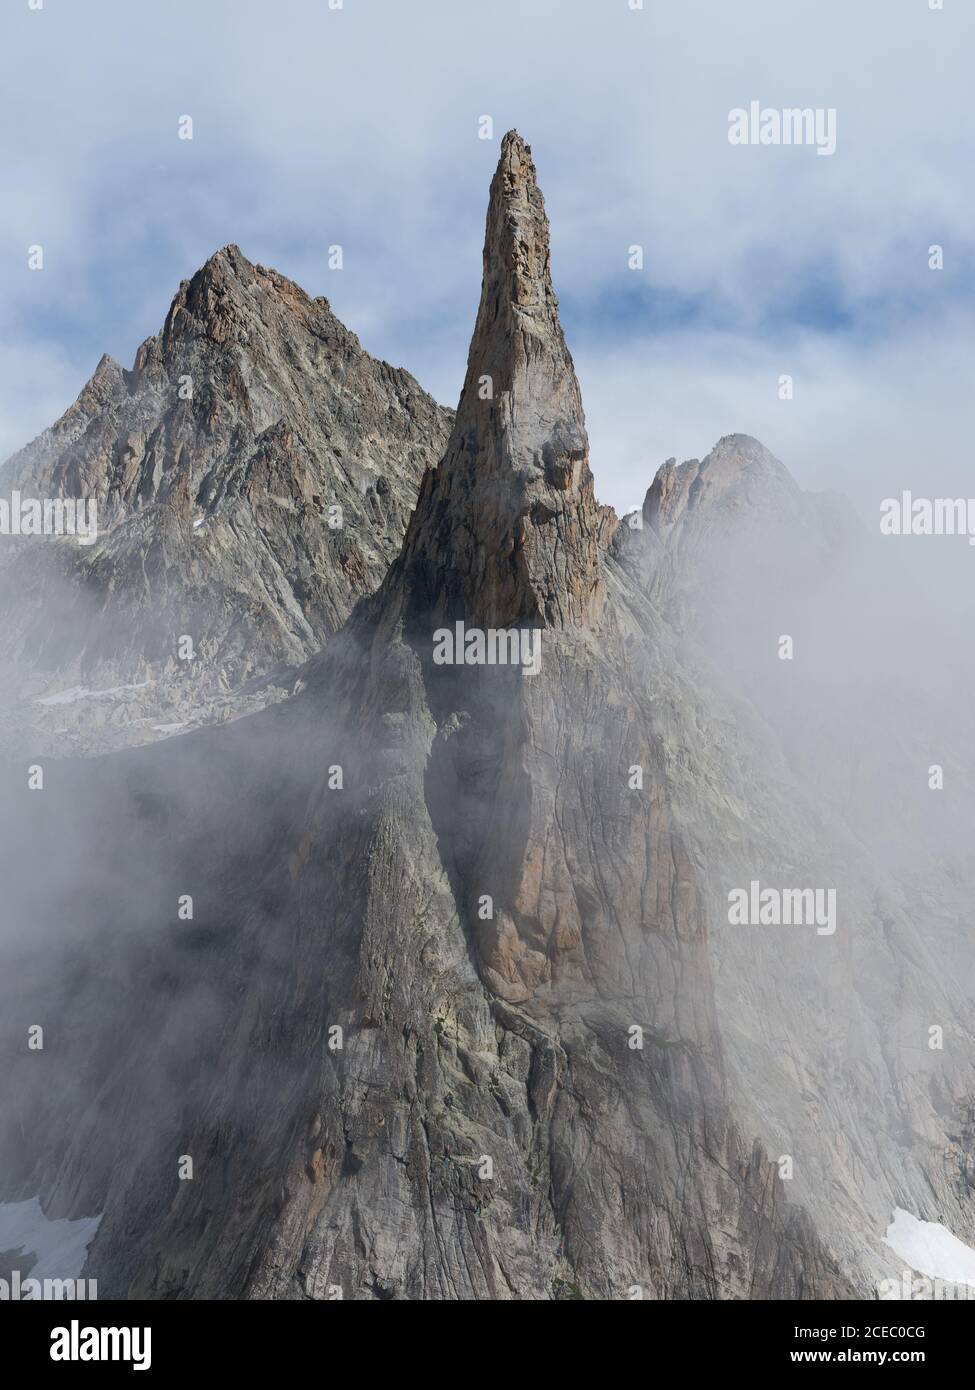 VUE AÉRIENNE.Pic de granit dans le brouillard.L'aiguille de Dibona, Saint-Christophe-en-Oisans, Isère, Auvergne-Rhône-Alpes, France. Banque D'Images